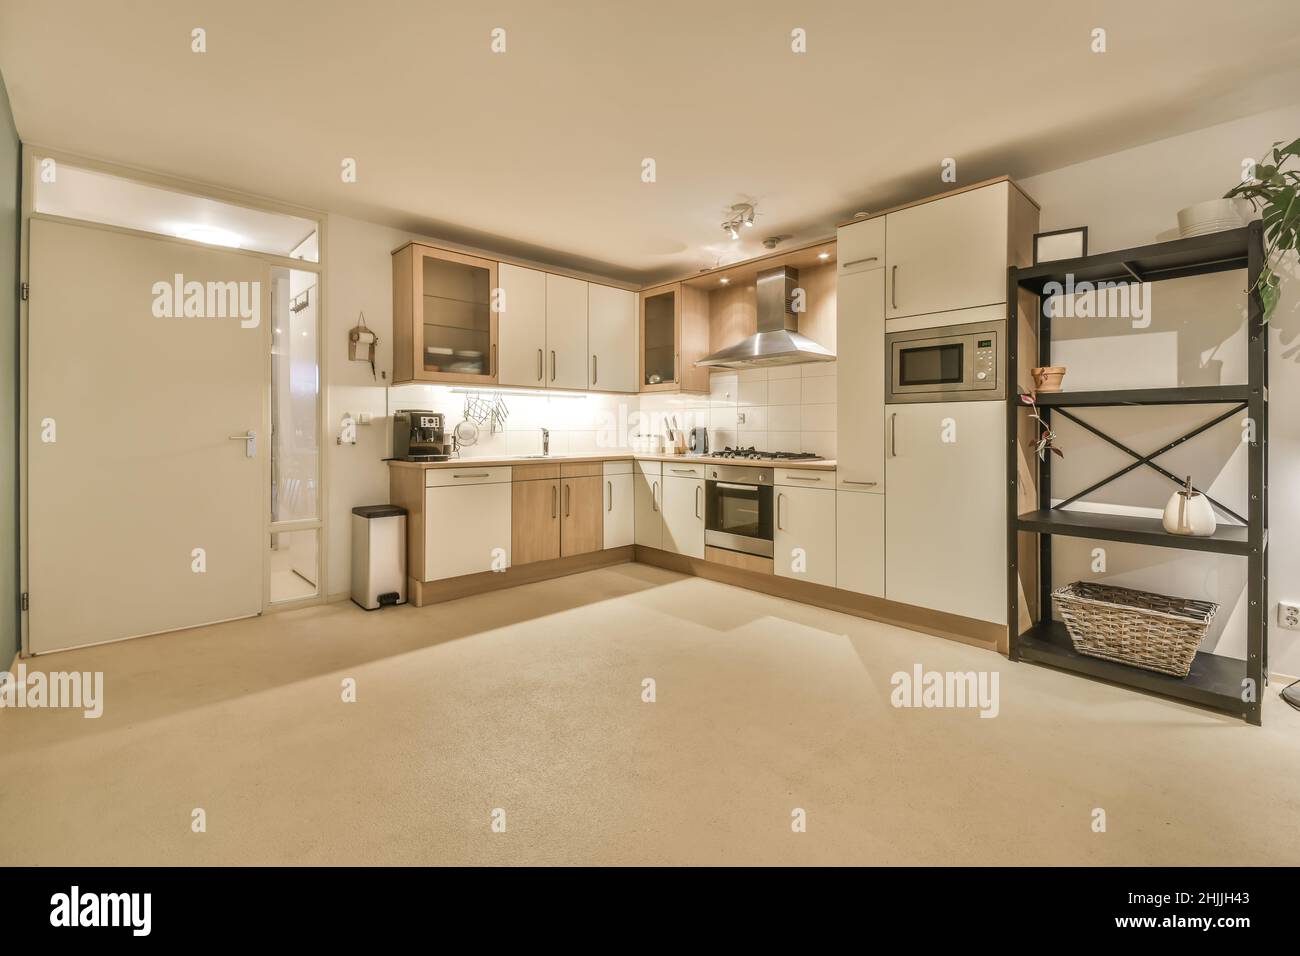 Cucina in una nuova casa di lusso, pavimenti in legno duro, armadi scuri Foto Stock